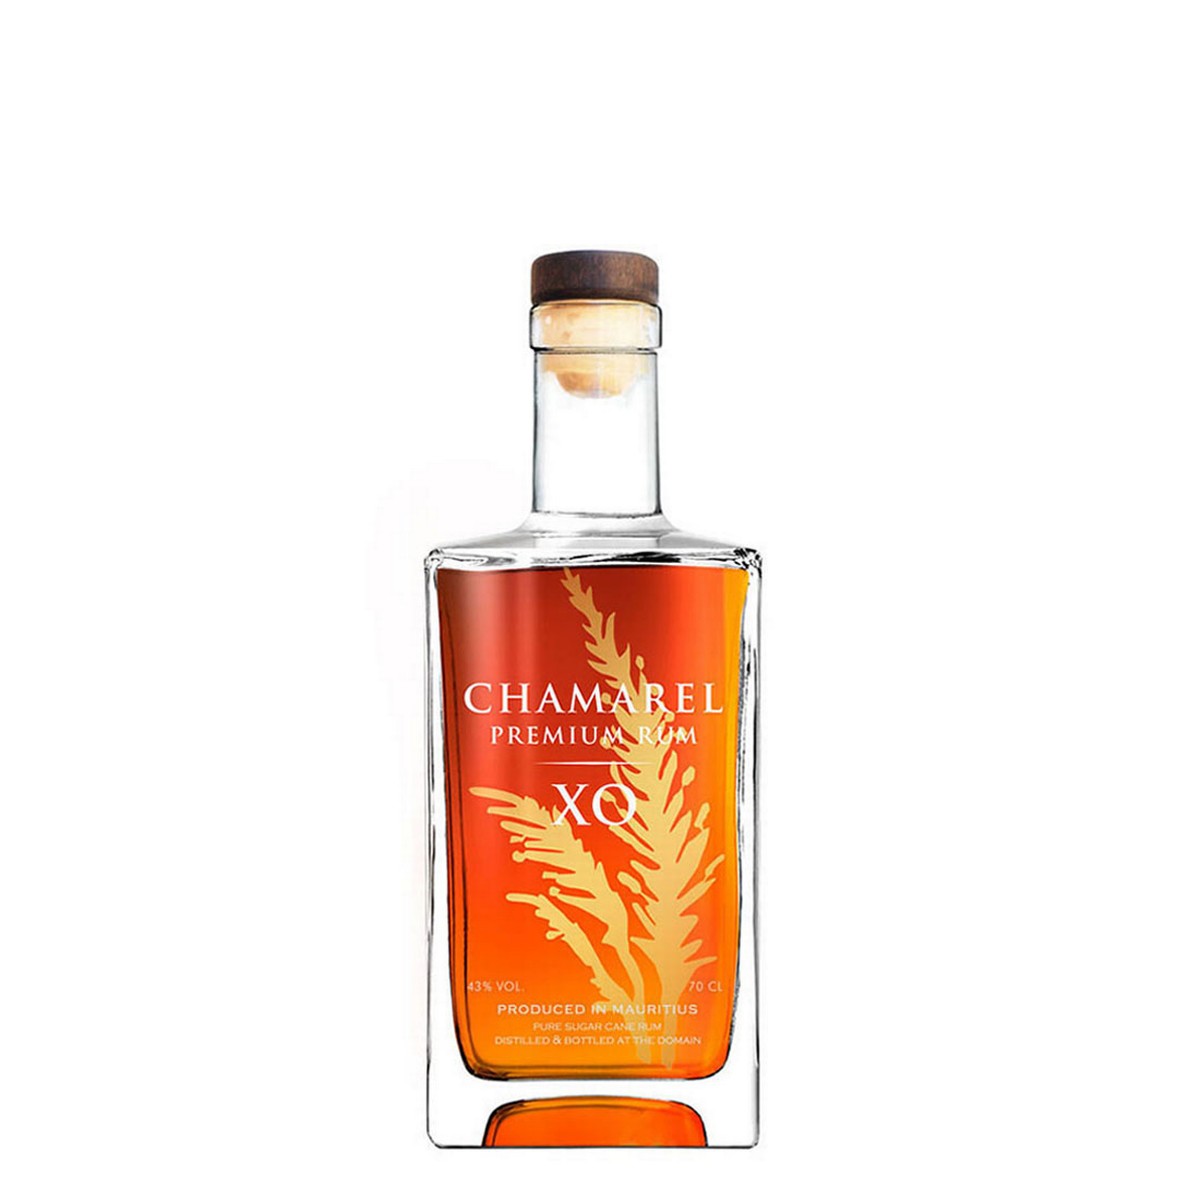 Chamarel Premium Rum XO